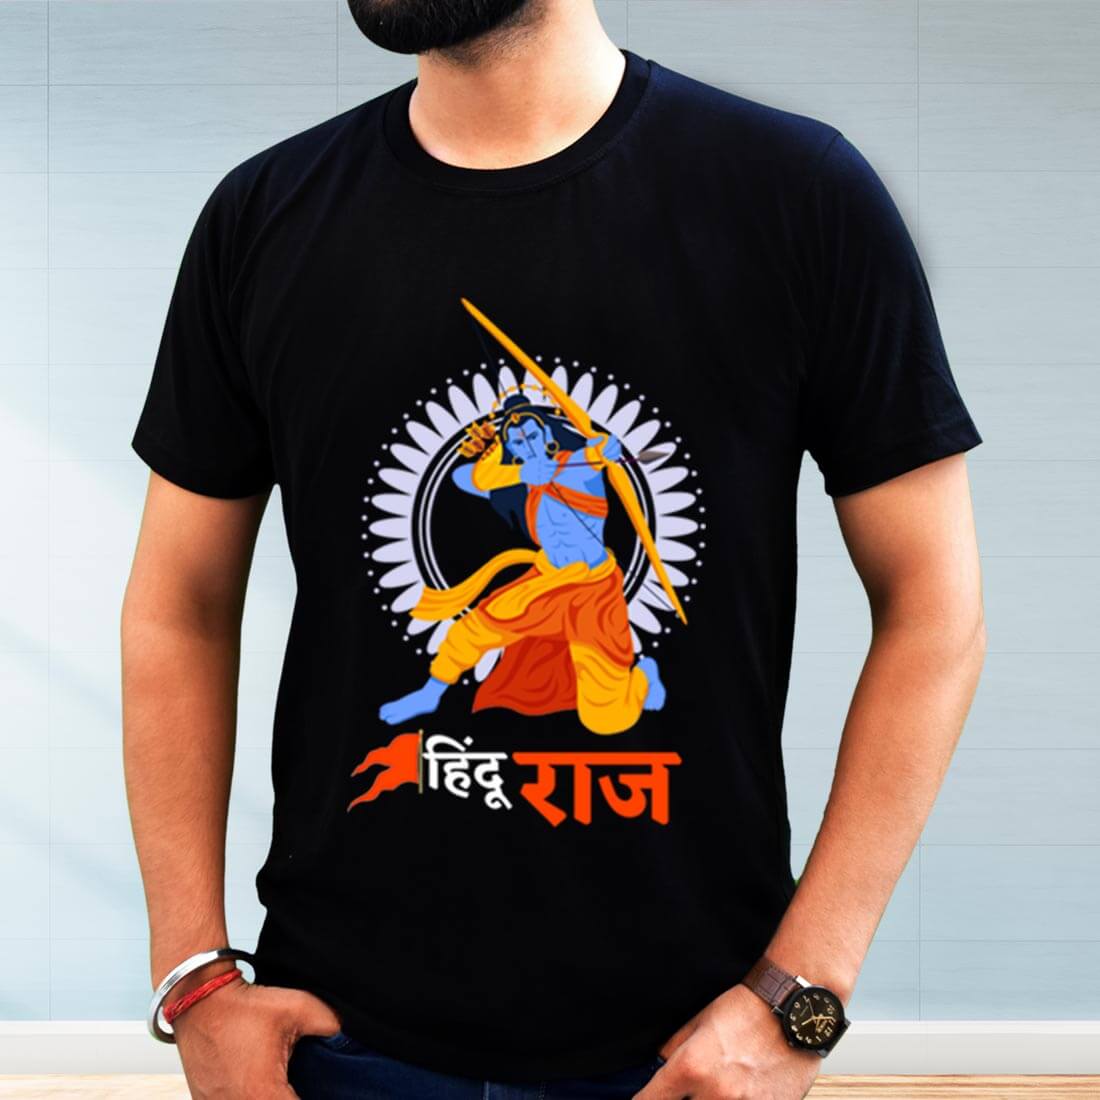 Hindu Raj Printed Black T-Shirt for Men